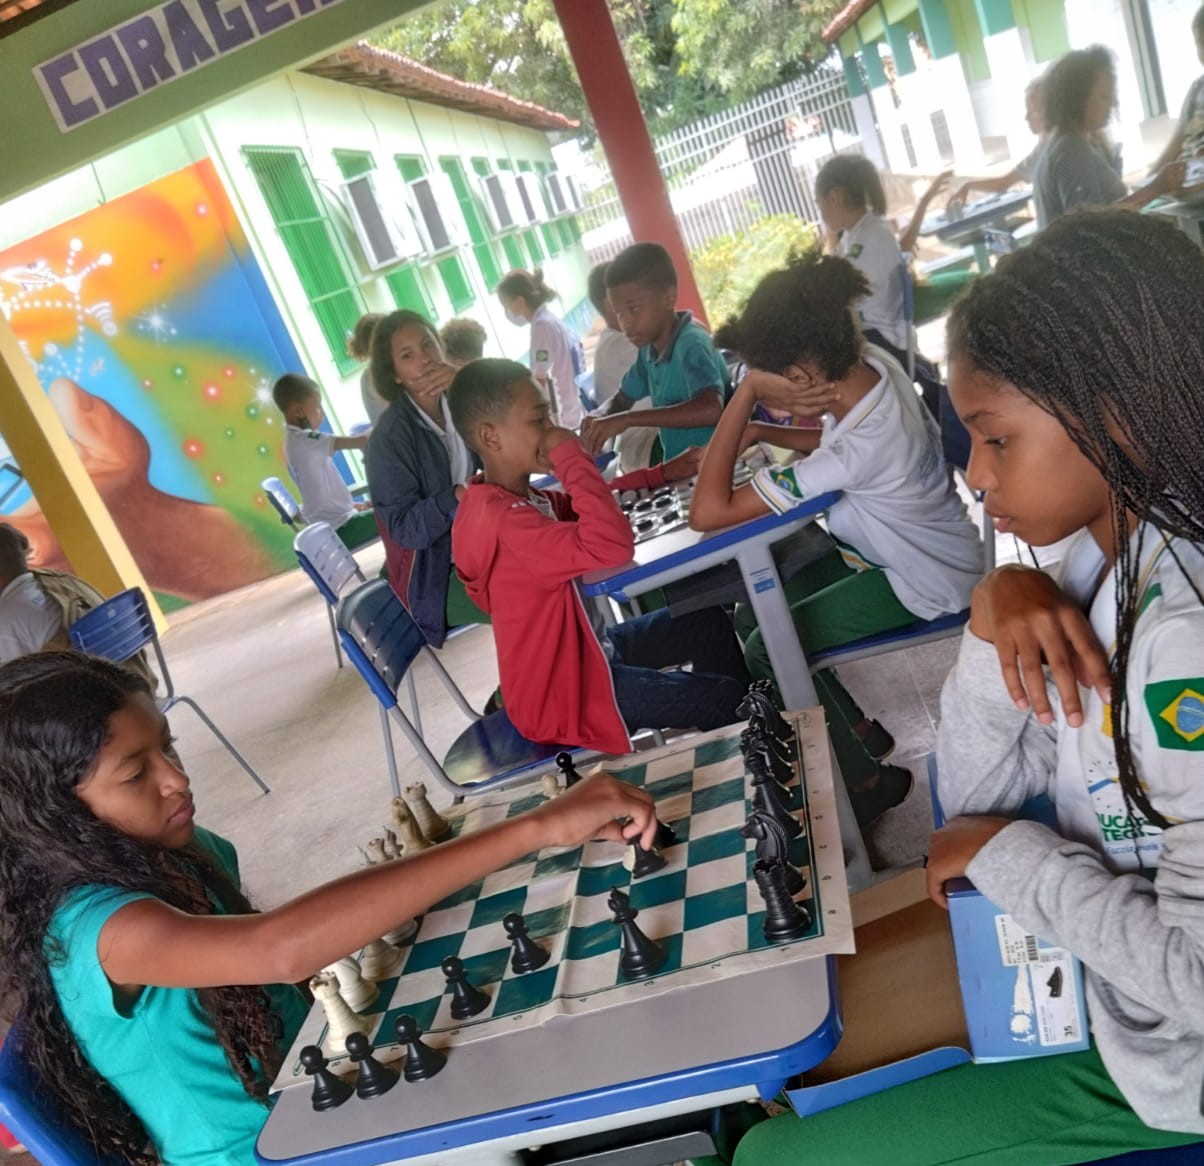 Escola usa jogo de xadrez para melhorar ensino da matemática - MEC